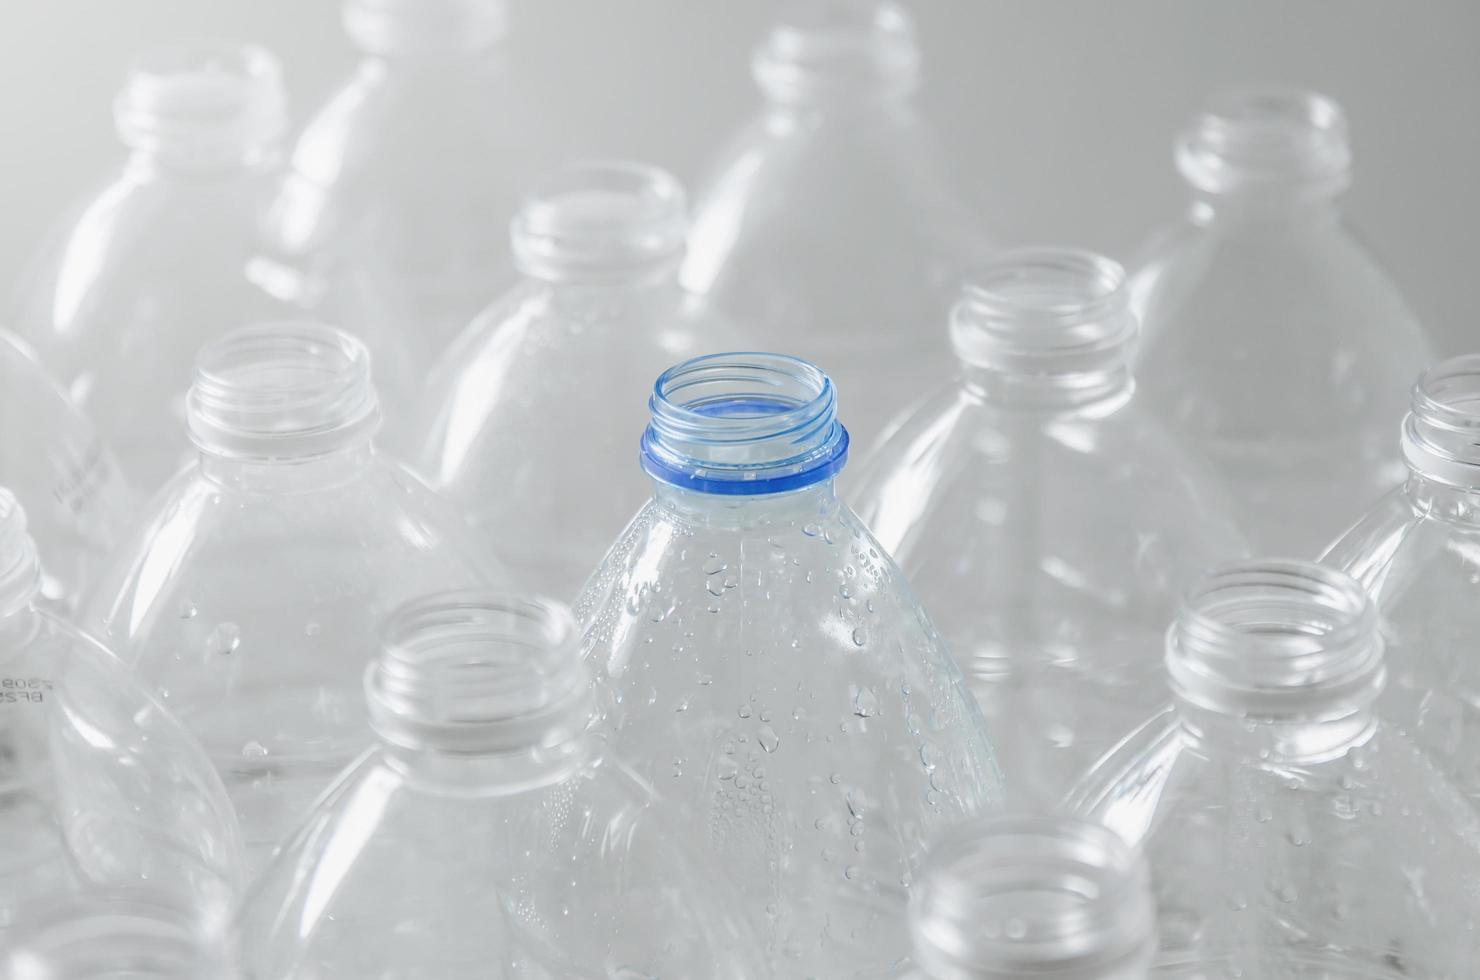 bouteilles vides à recycler, campagne pour réduire le plastique et sauver le monde. photo